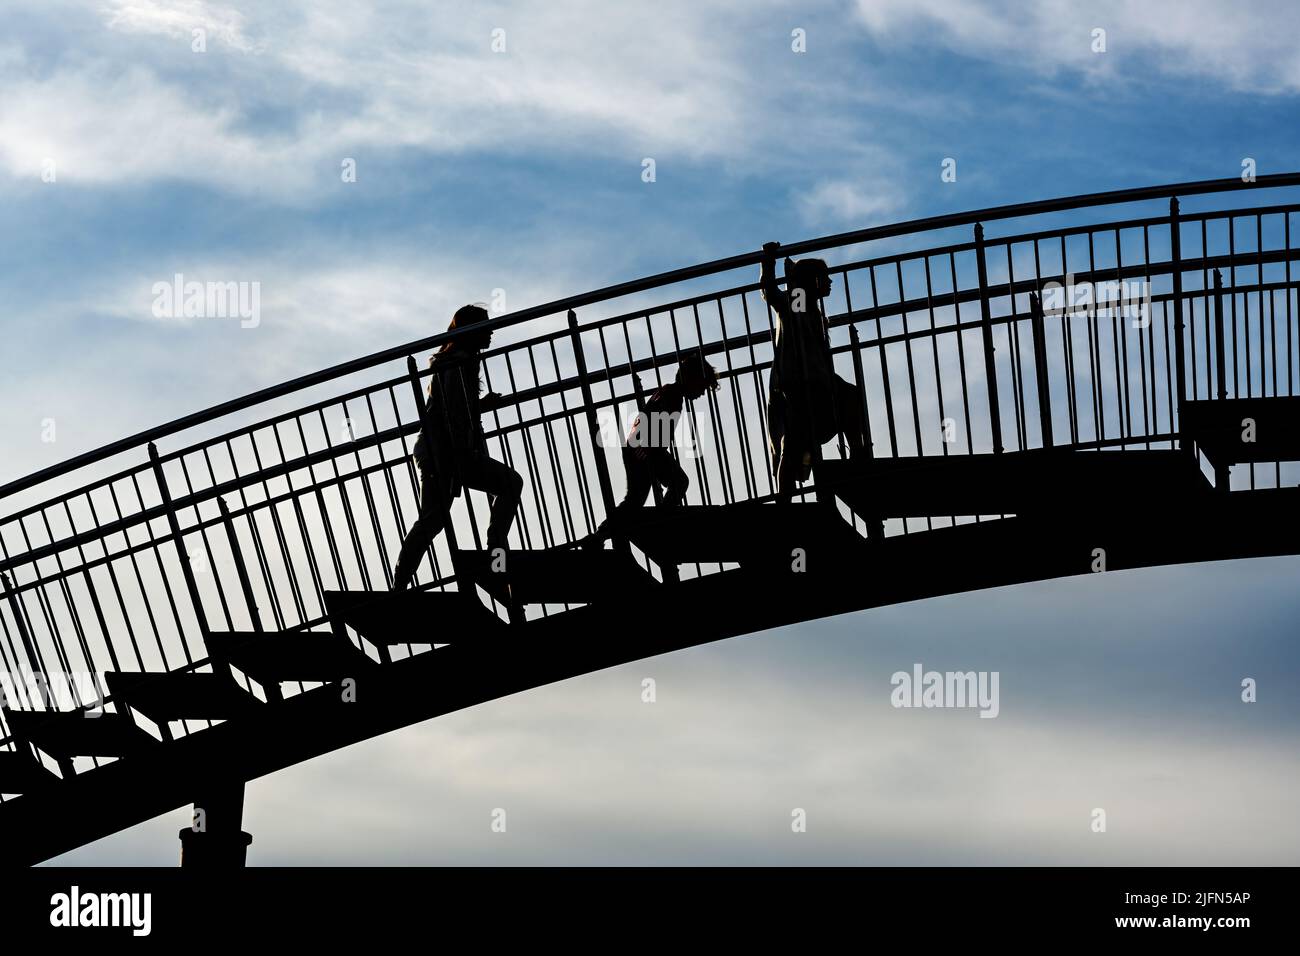 Drei Kinder als Silhouetten klettern die Stufen einer großen Metallbrücke gegen einen blauen Himmel mit Wolken, zukünftige Herausforderung für die nächste Generation c Stockfoto